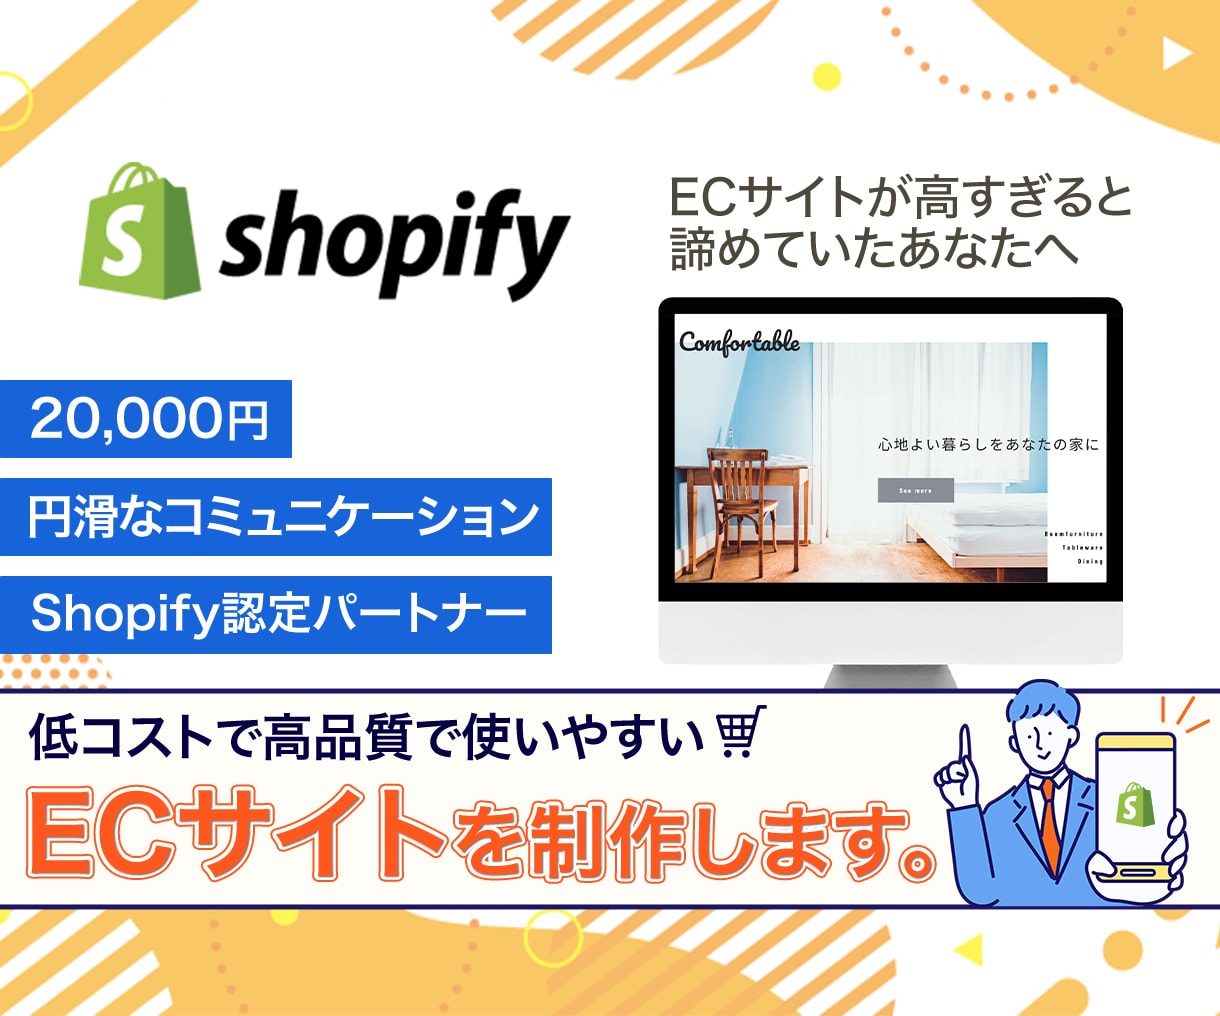 Shopify_低コストであなたのお店を作ります ShopifyでECサイトを破格の安さで制作します。 イメージ1